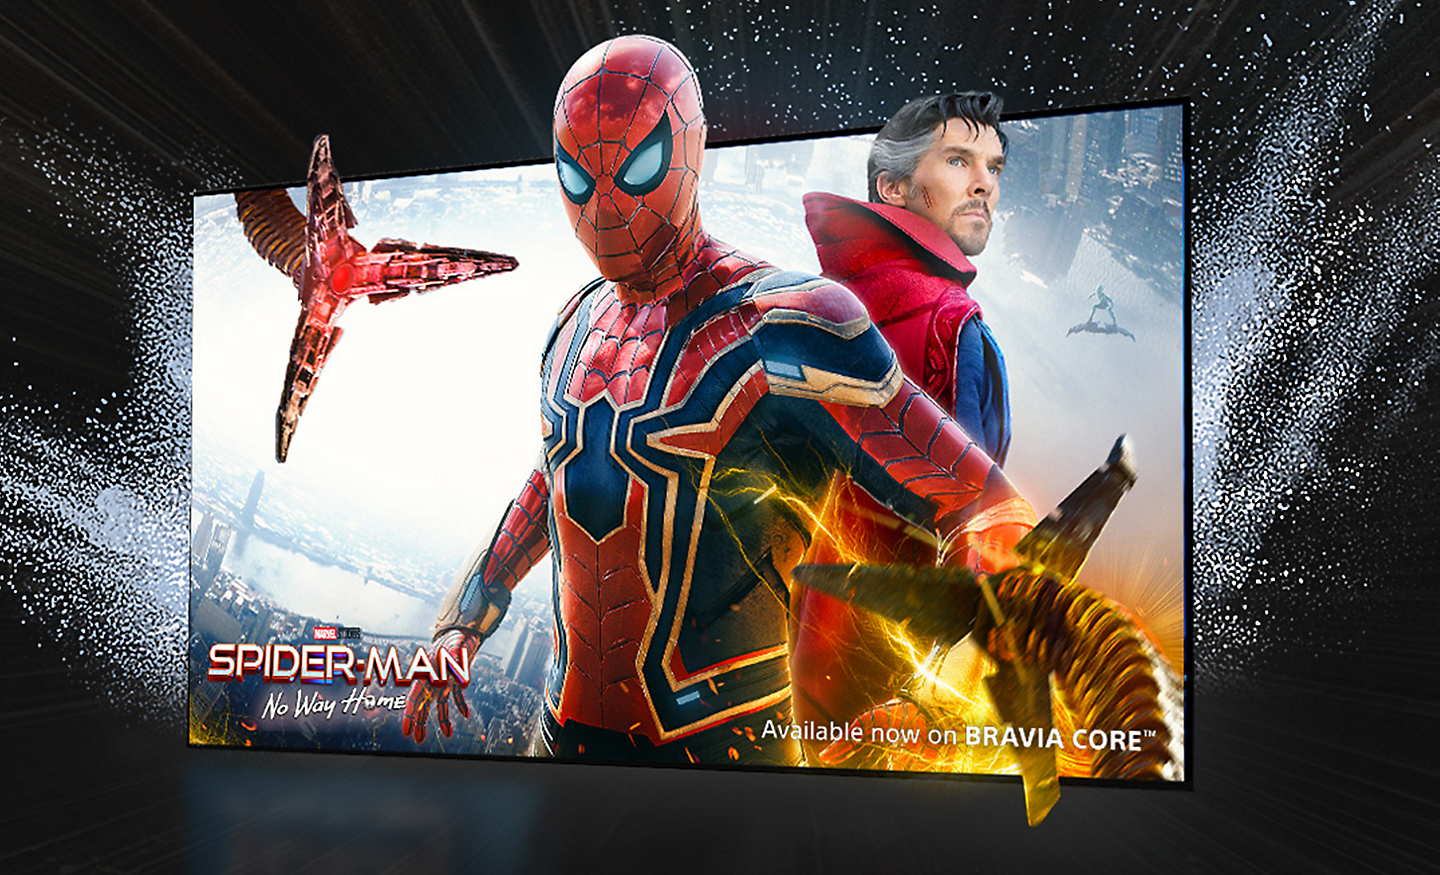 Pantalla de televisión que muestra la película SPIDER-MAN No Way Home con Spider-Man saliendo de la pantalla